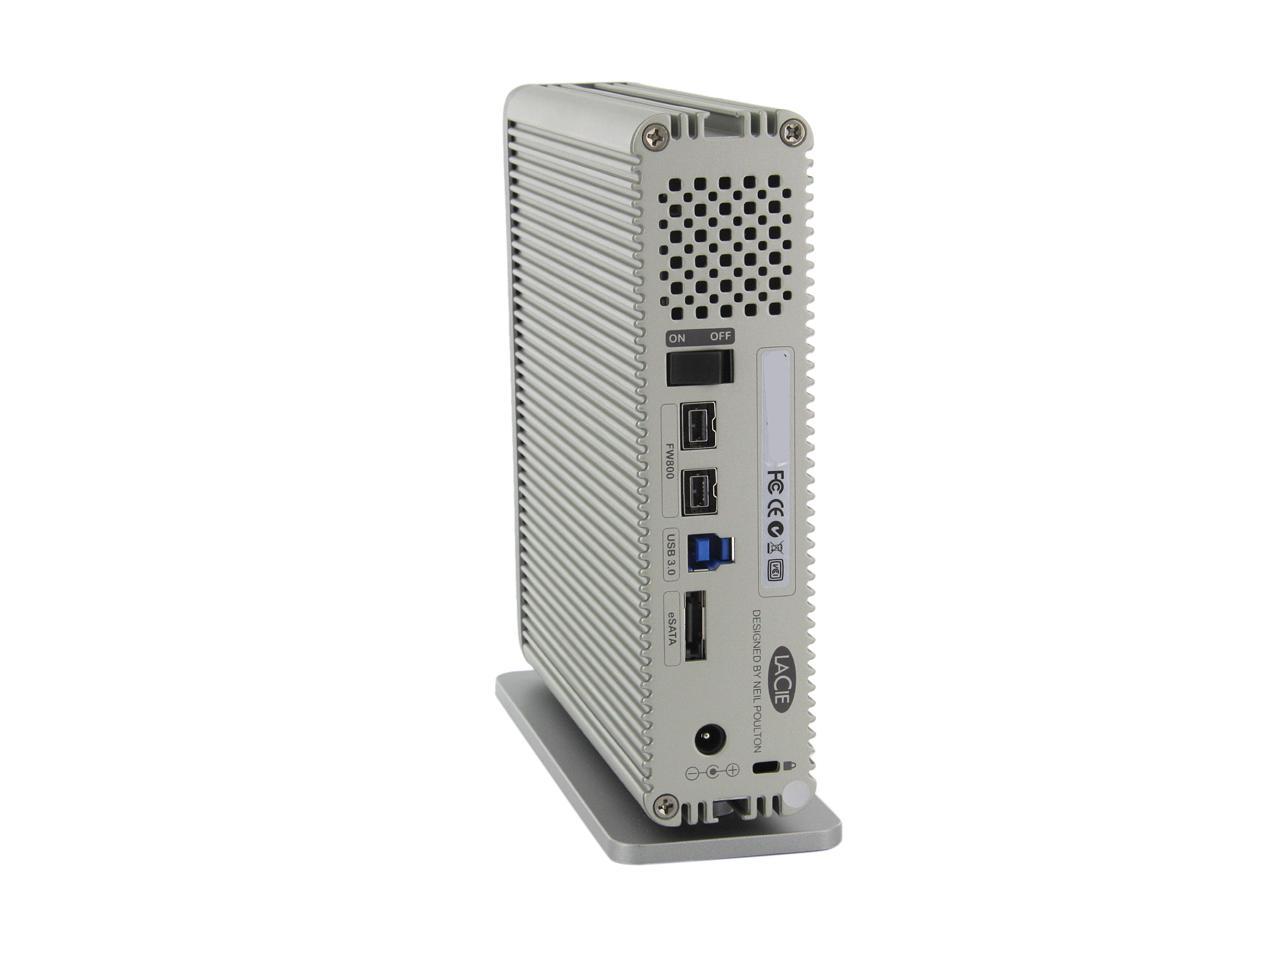 Durpower FireWire 800 4-9 Pin DV Cable/Cord/Lead for Lacie D2 Quadra USB 3.0 3TB 301549u 